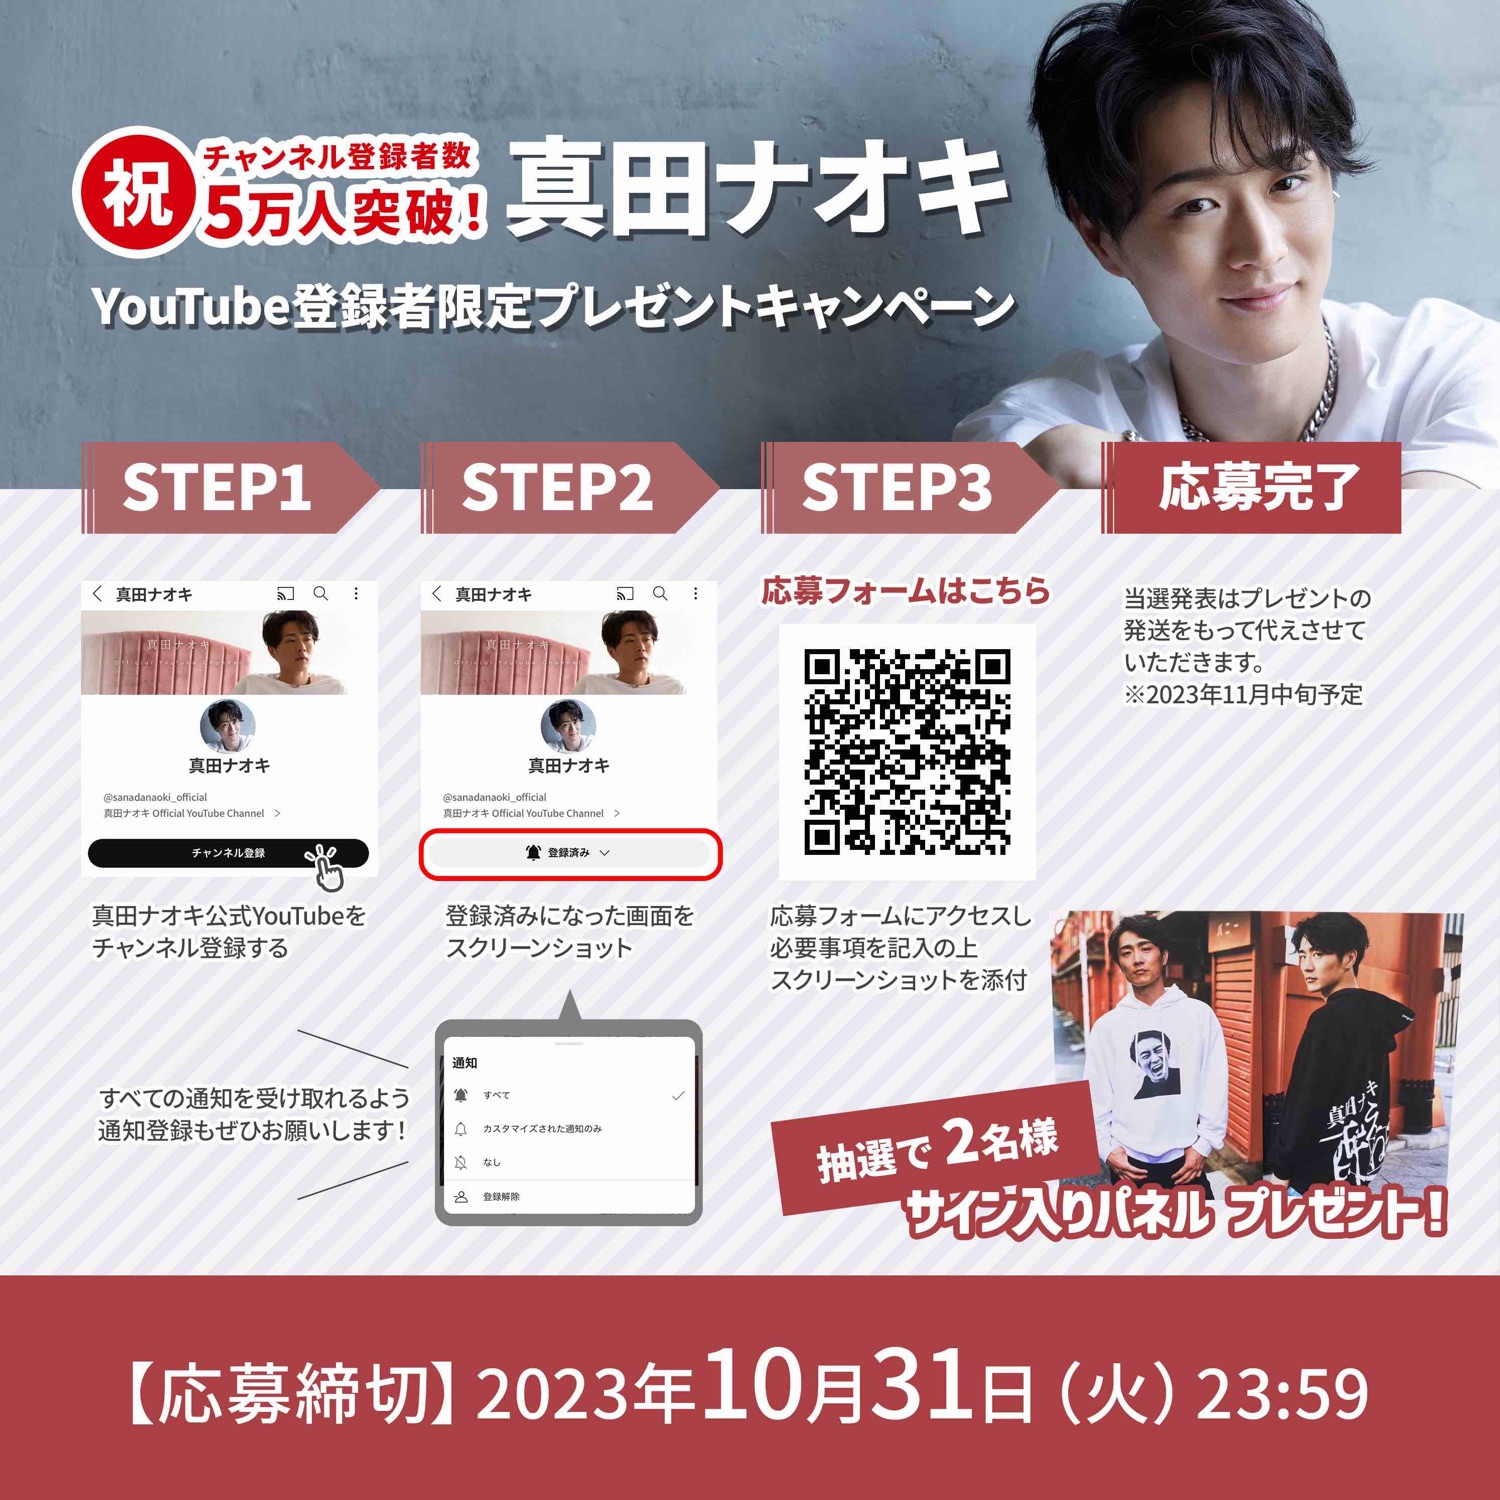 真田ナオキ公式YouTubeチャンネル登録者5万人突破記念プレゼントキャンペーン